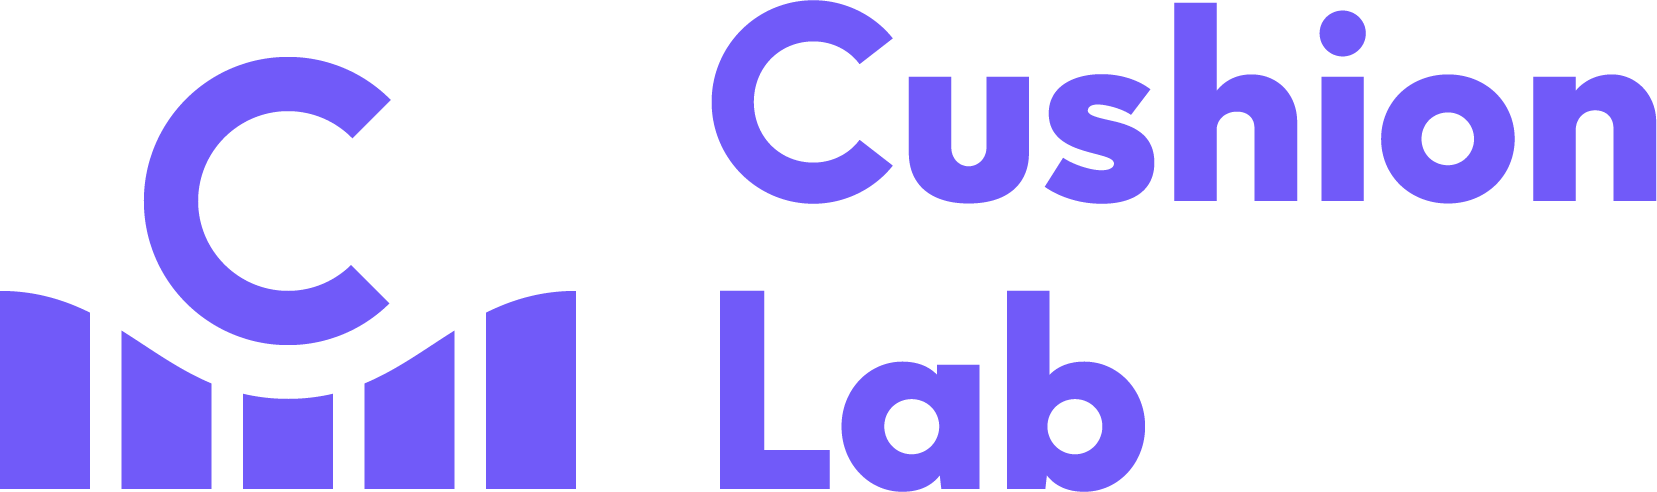 cushion lab logo